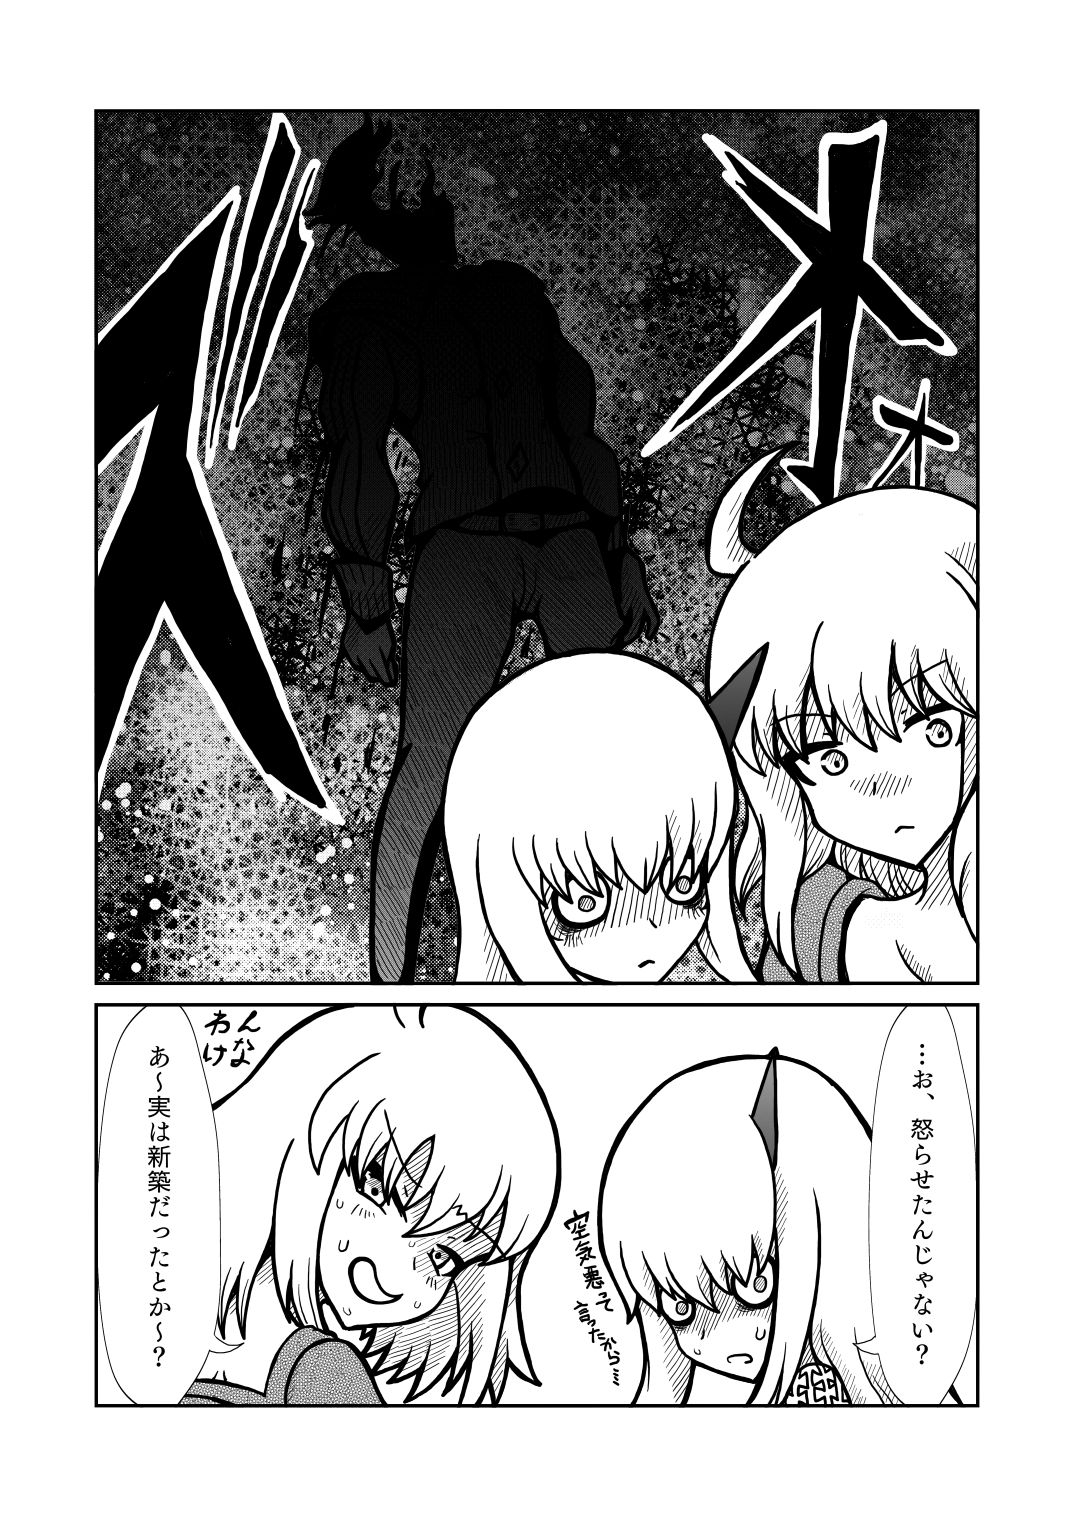 [Shigato] Jeanne x Lavi Dunwich Kai Kikou (Fate/Grand Order, Cthulhu Mythos) [Digital] 25